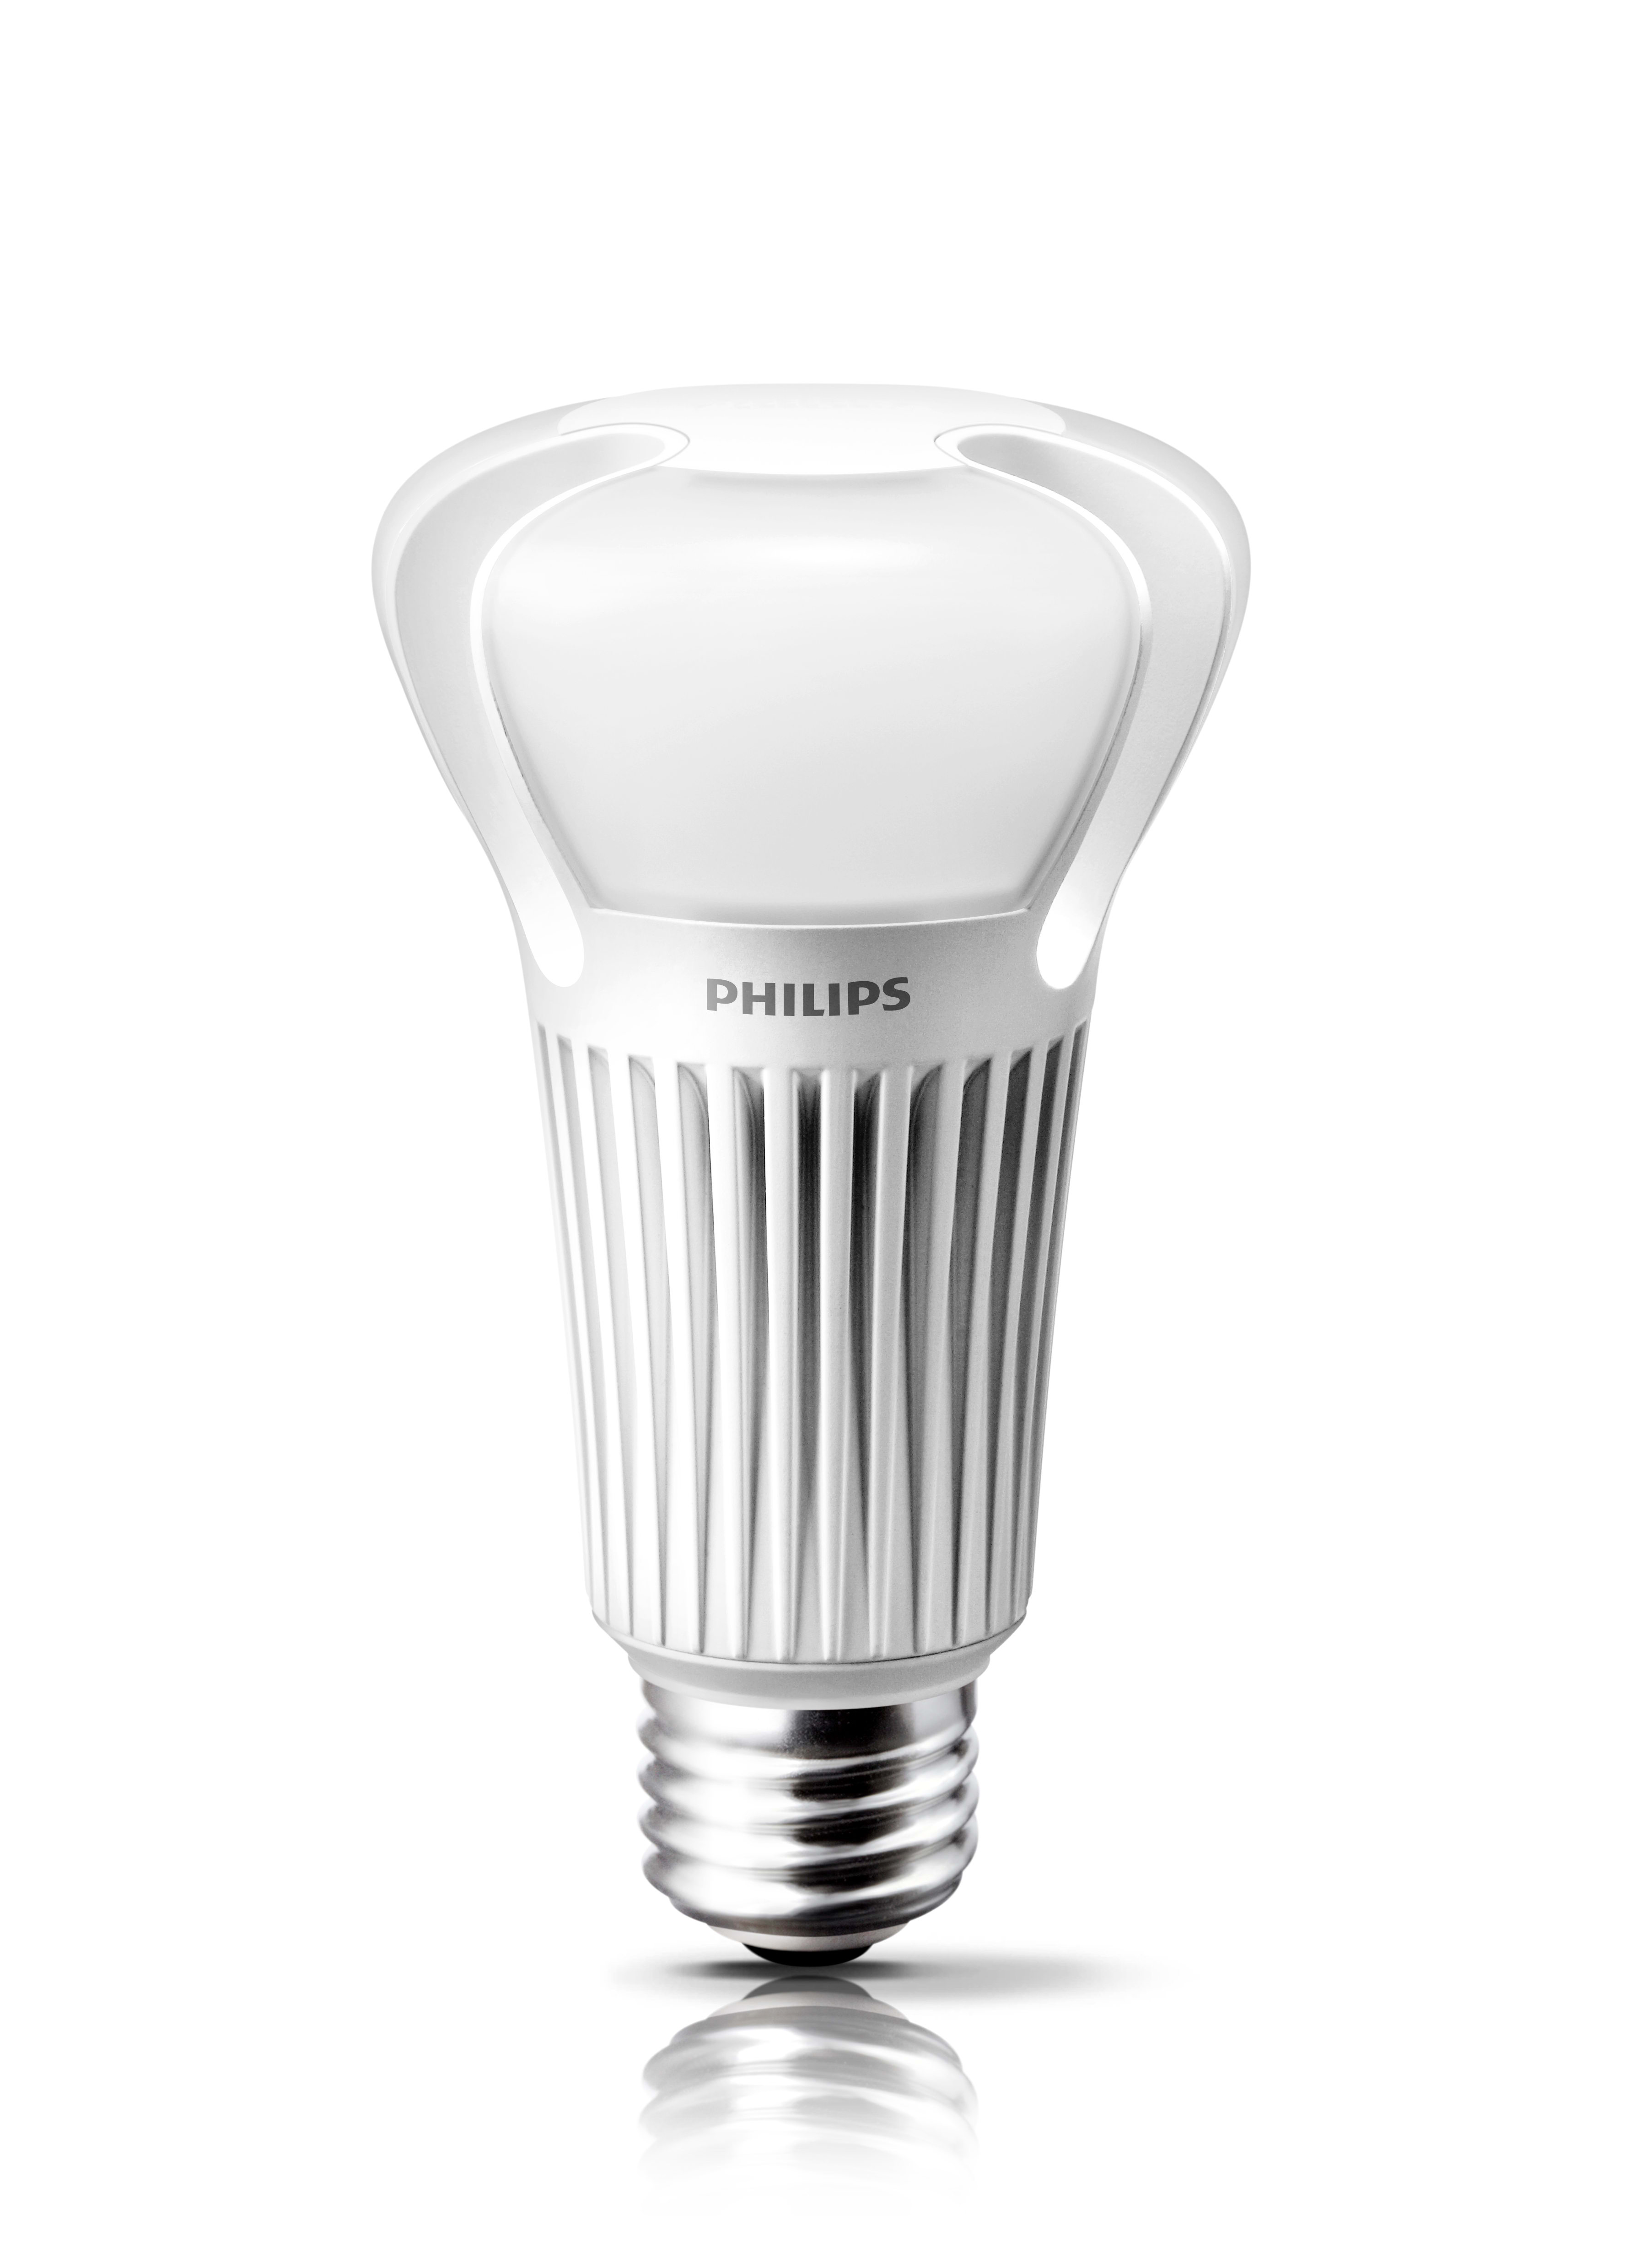 Philips - MAS LEDbulb D 13-75W B22 827 A67